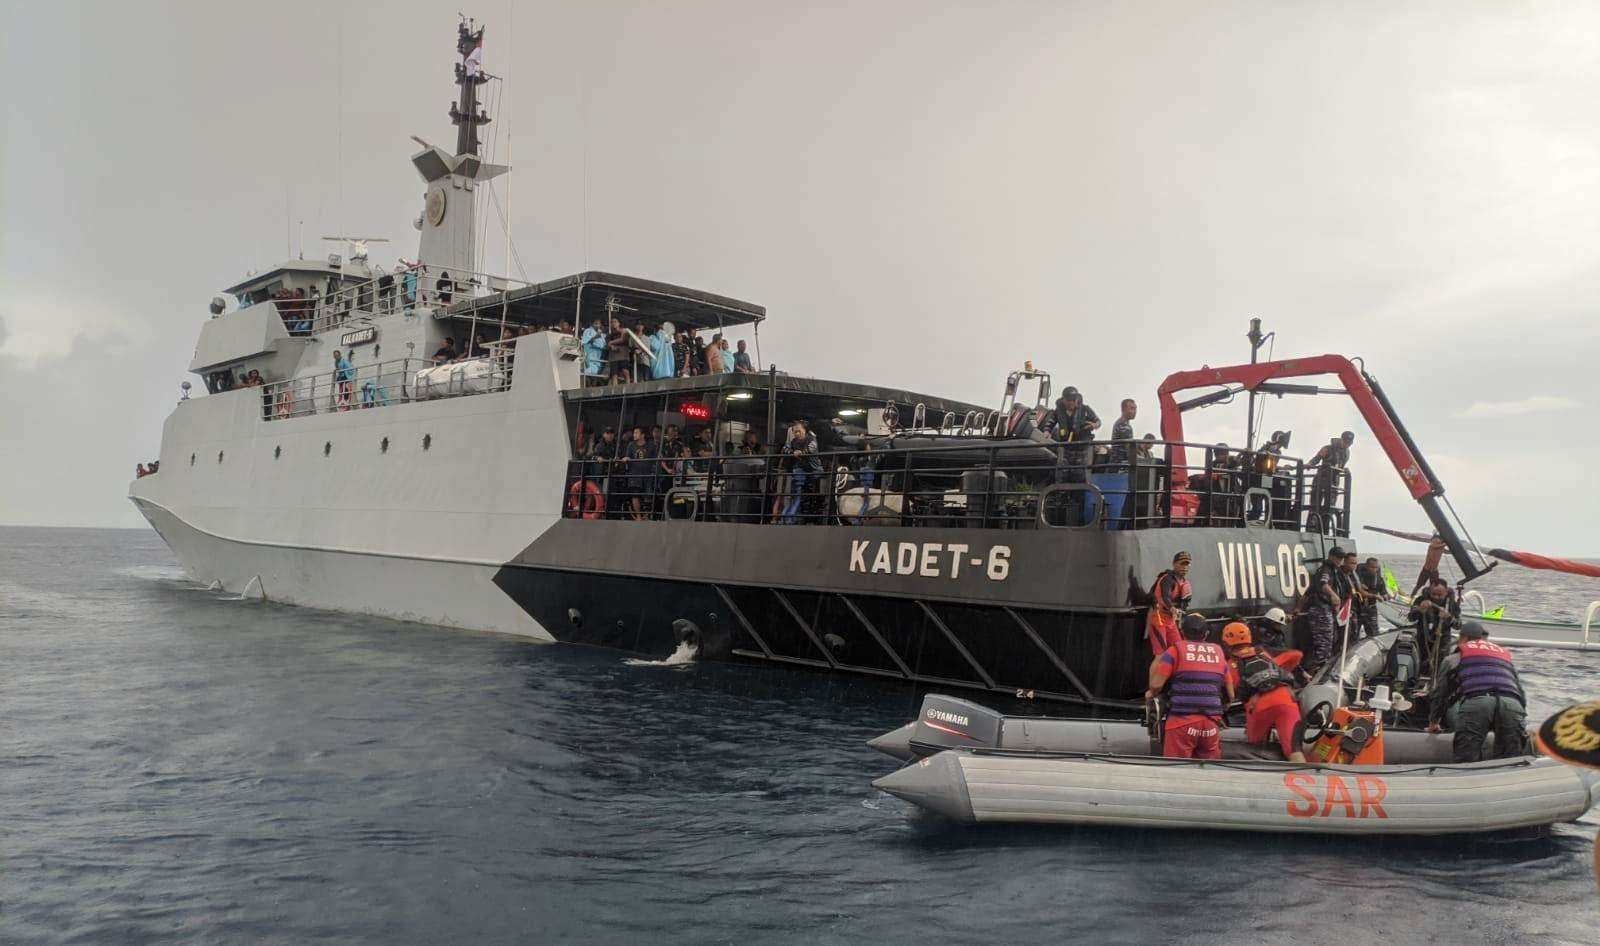 Sejumlah penumpang kapal Mutiara Timur I dievakuasi ke KAL Kadet 6 (Foto: Istimewa)